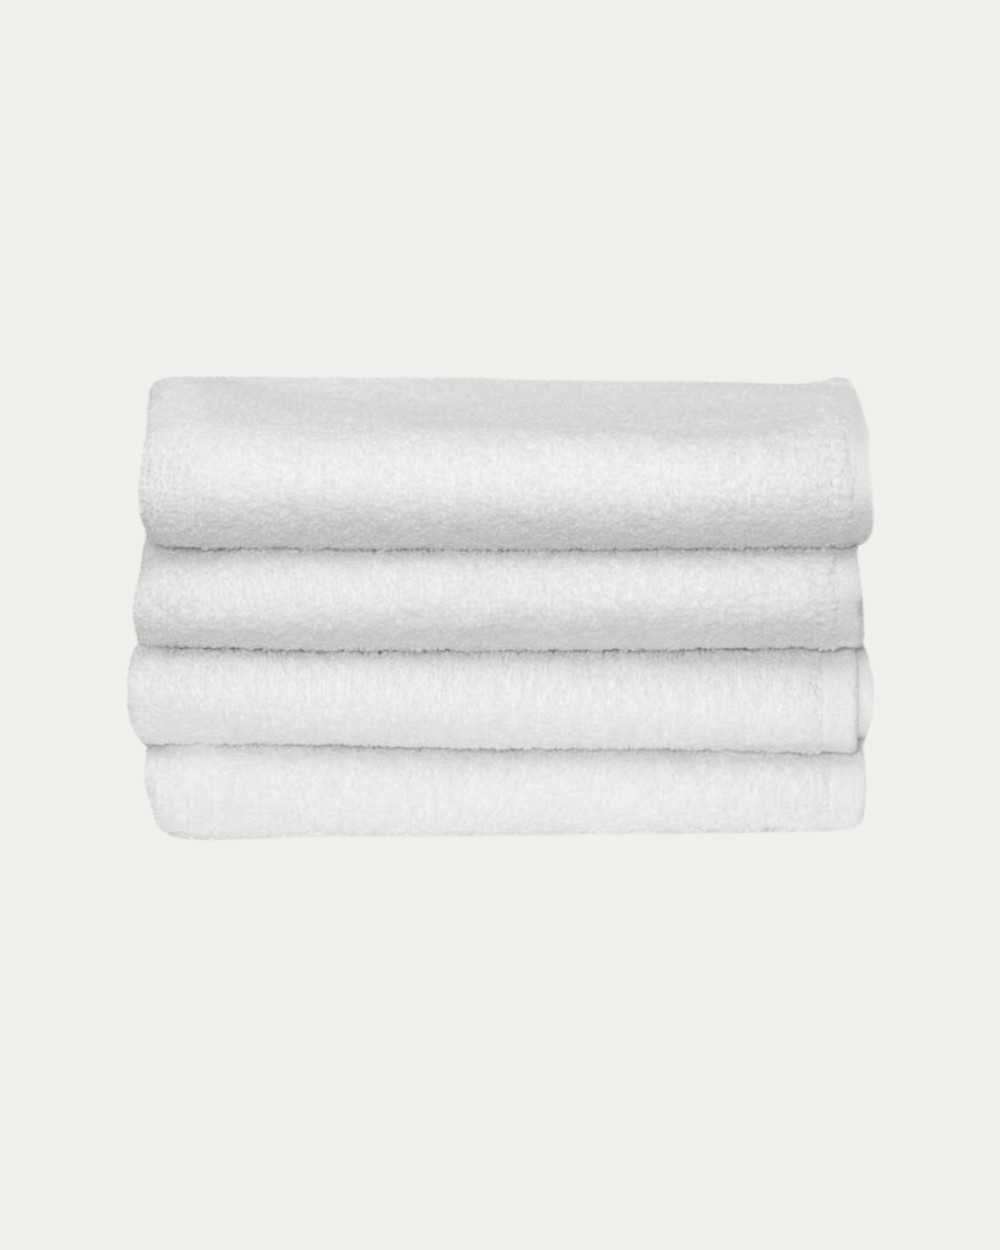 Pack de 5 Toallas Blancas 100% algodón (650 grs), Ropa de Cama